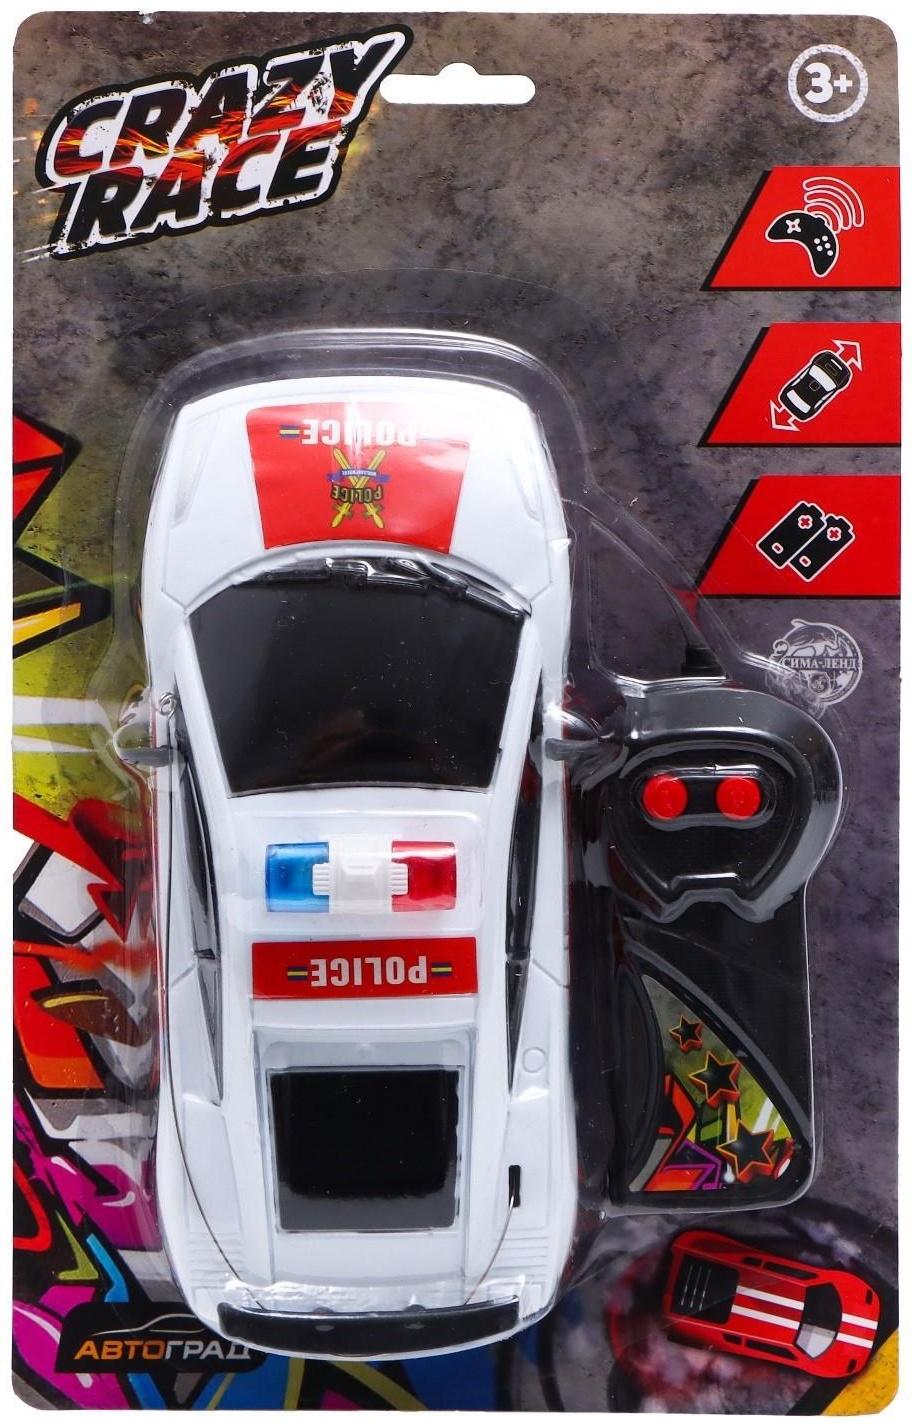 Машина радиоуправляемая «Полицейский патруль», работает от батареек, цвет бело-красный